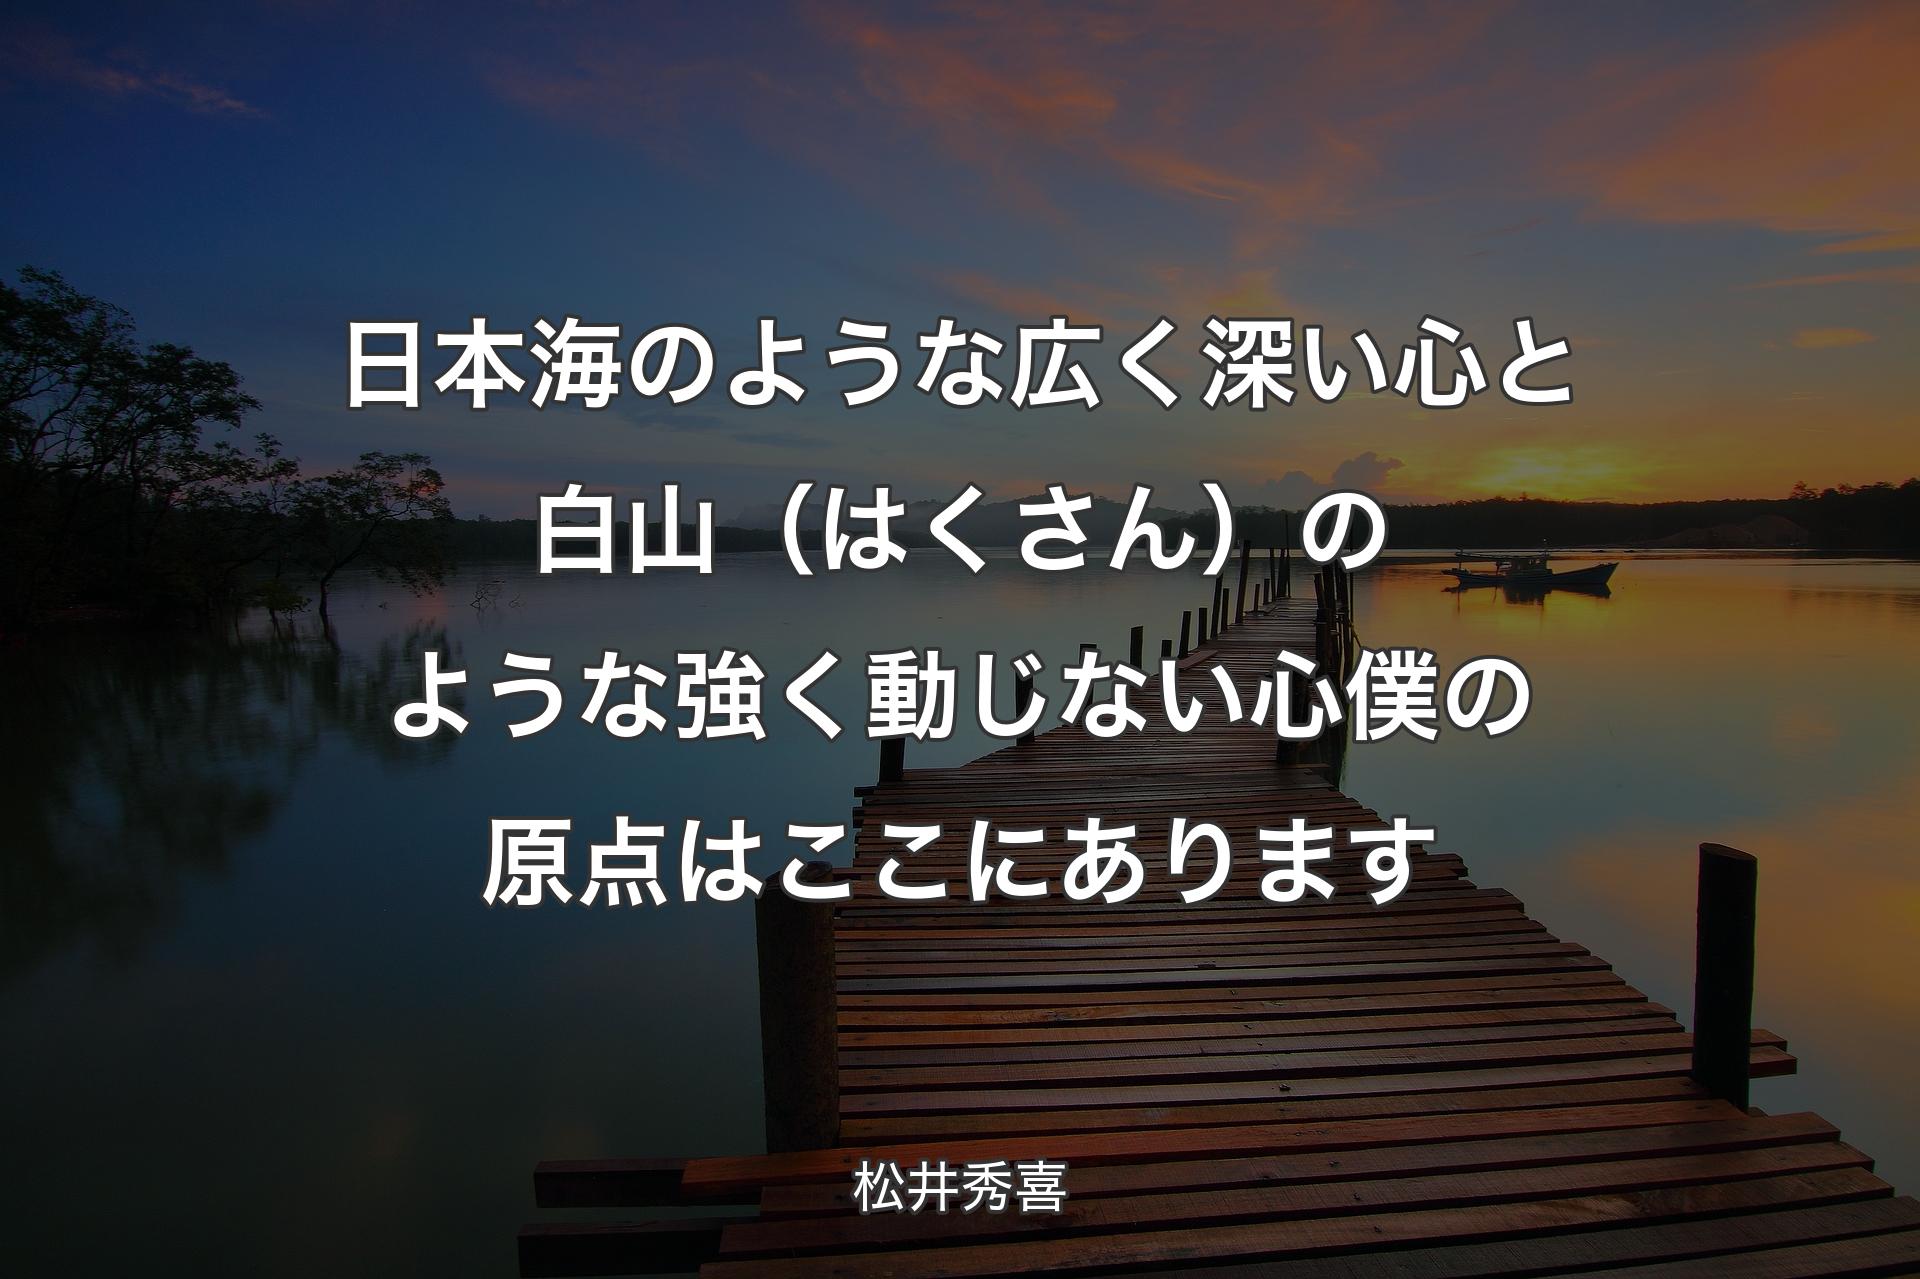 【背景3】日本海の�ような広く深い心と 白山（はくさん）のような強く動じない心 僕の原点はここにあります - 松井秀喜